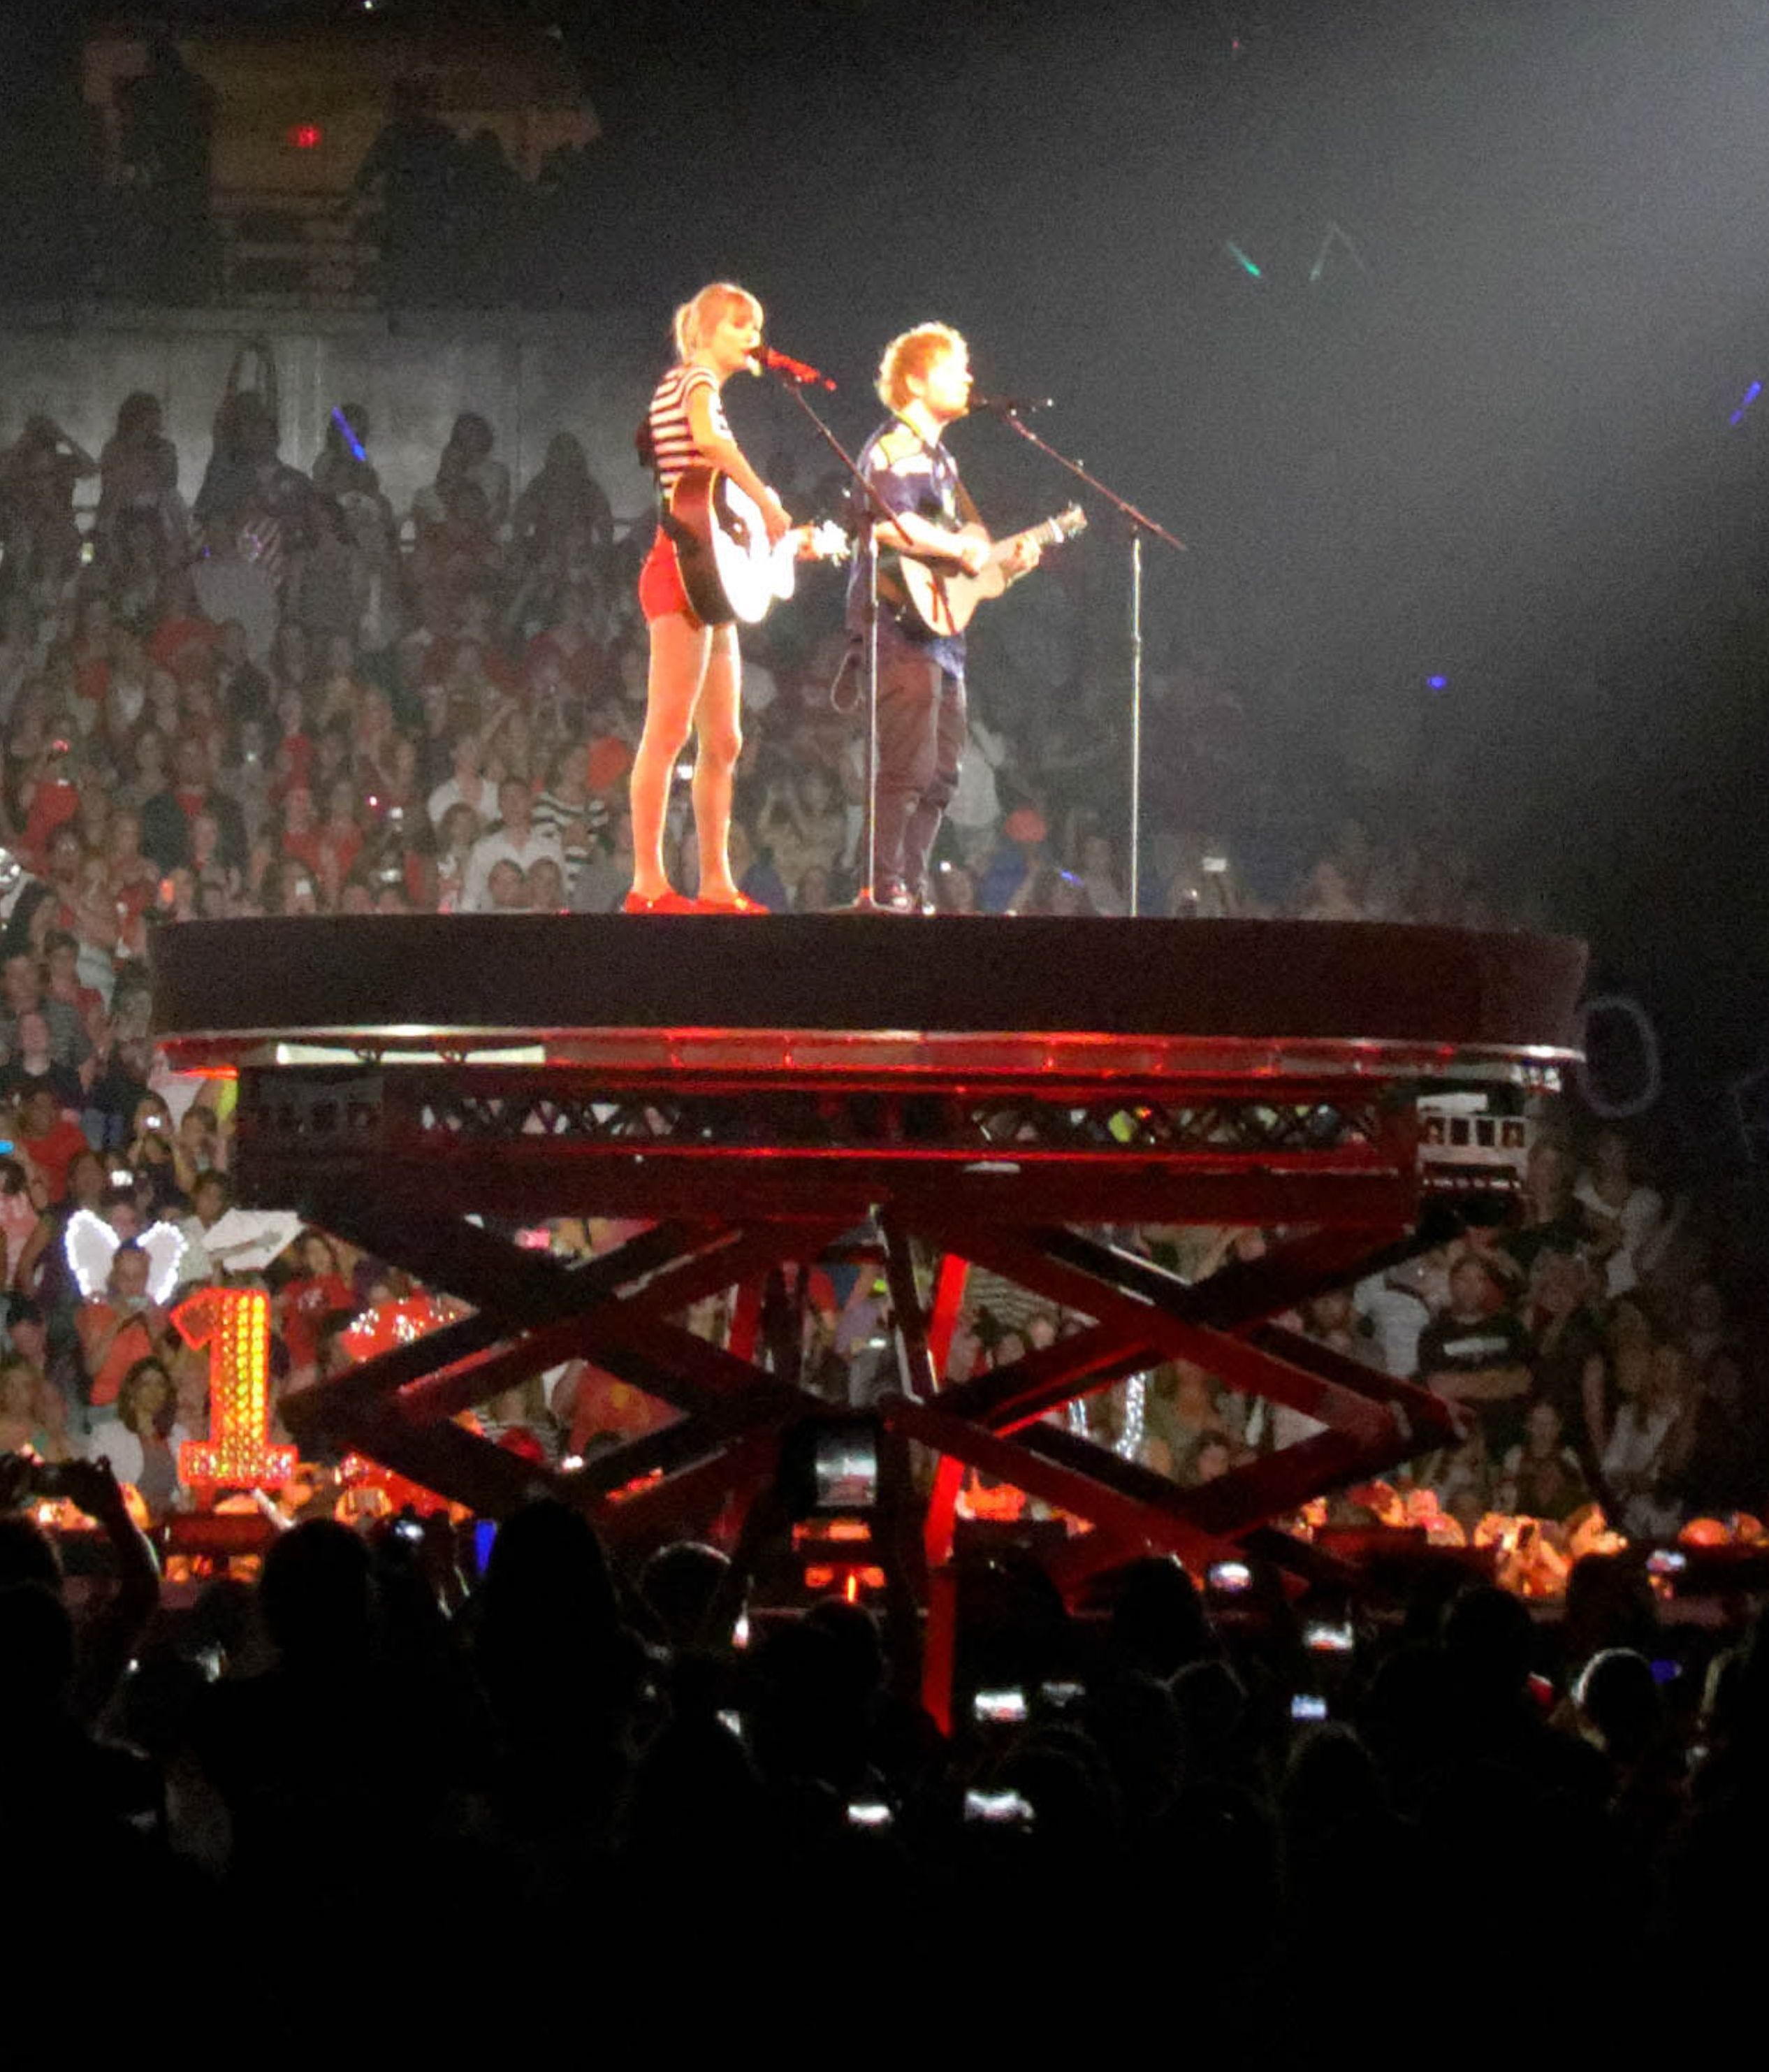 Filetaylor Swift Ed Sheeran On B Stage Red Tour